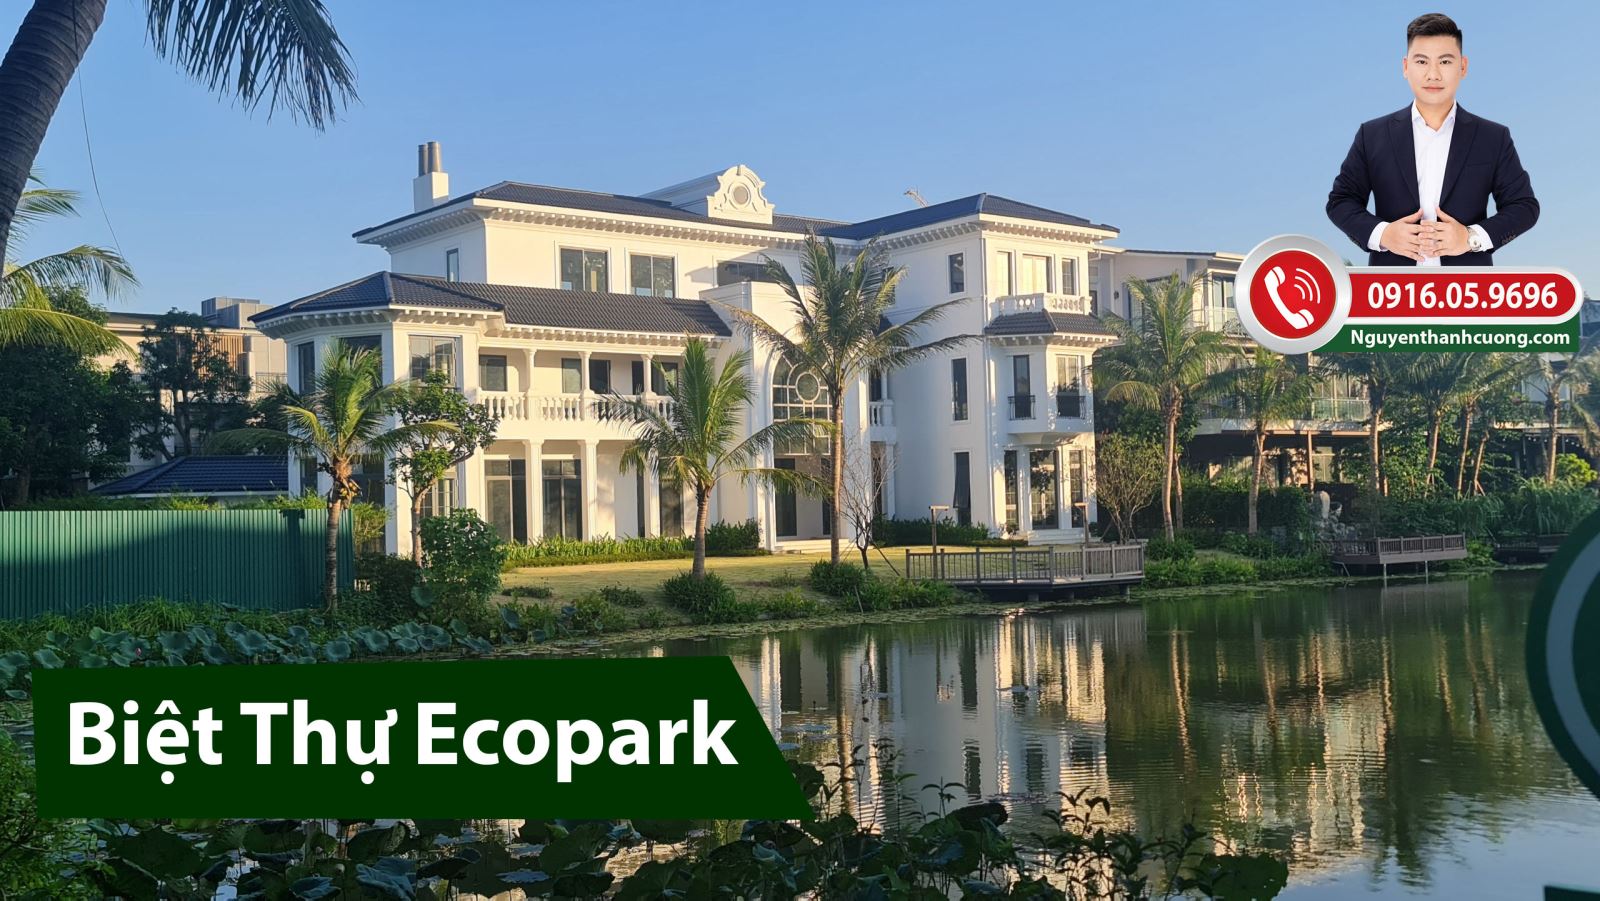 Giá bán Biệt thự Ecopark Hưng Yên